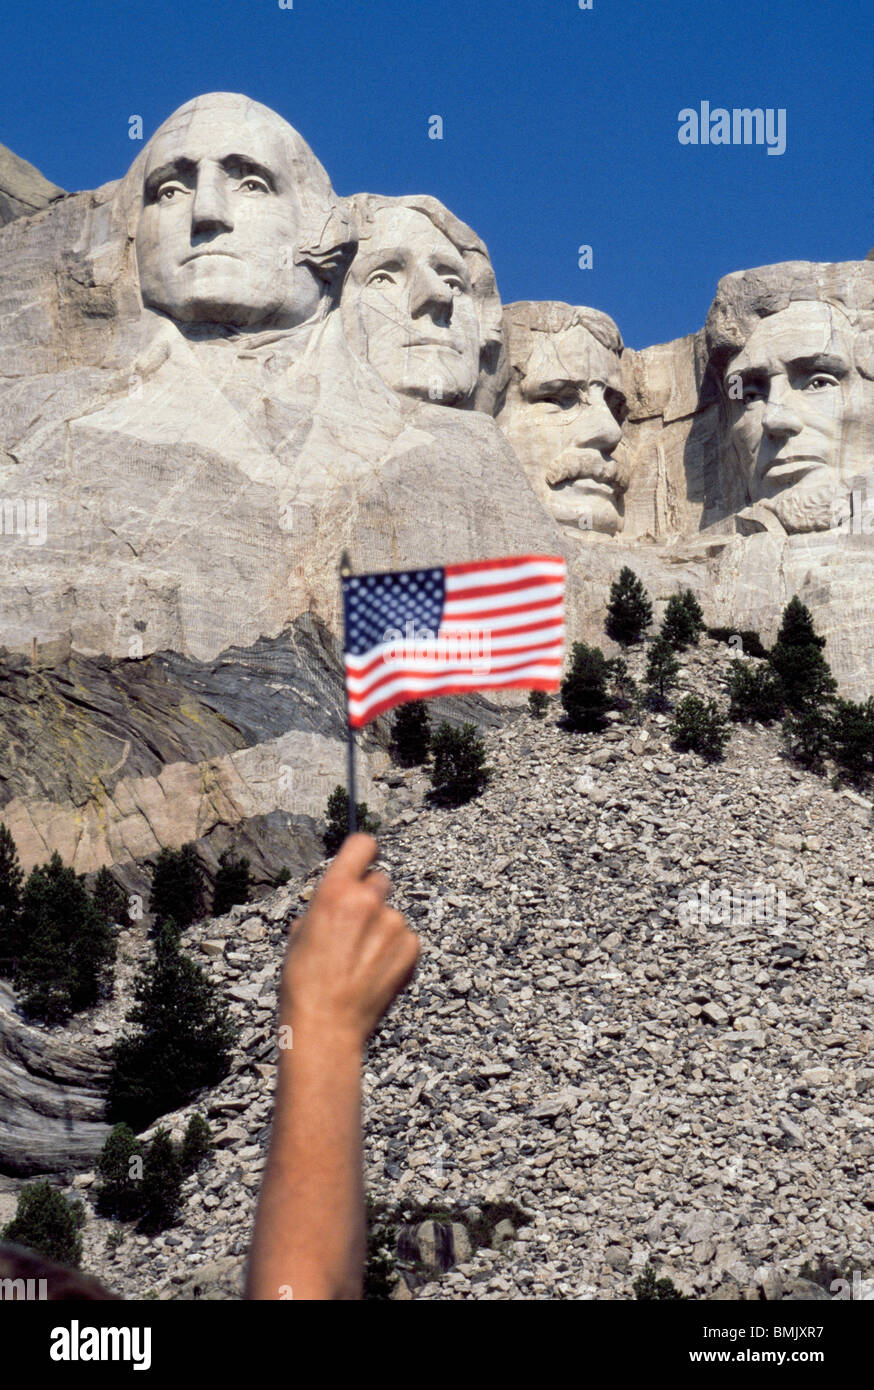 Un visiteur de Mount Rushmore National Memorial vagues un drapeau américain pour rendre hommage à quatre présidents américains sculptés sur une montagne dans le Dakota du Sud, USA. Banque D'Images